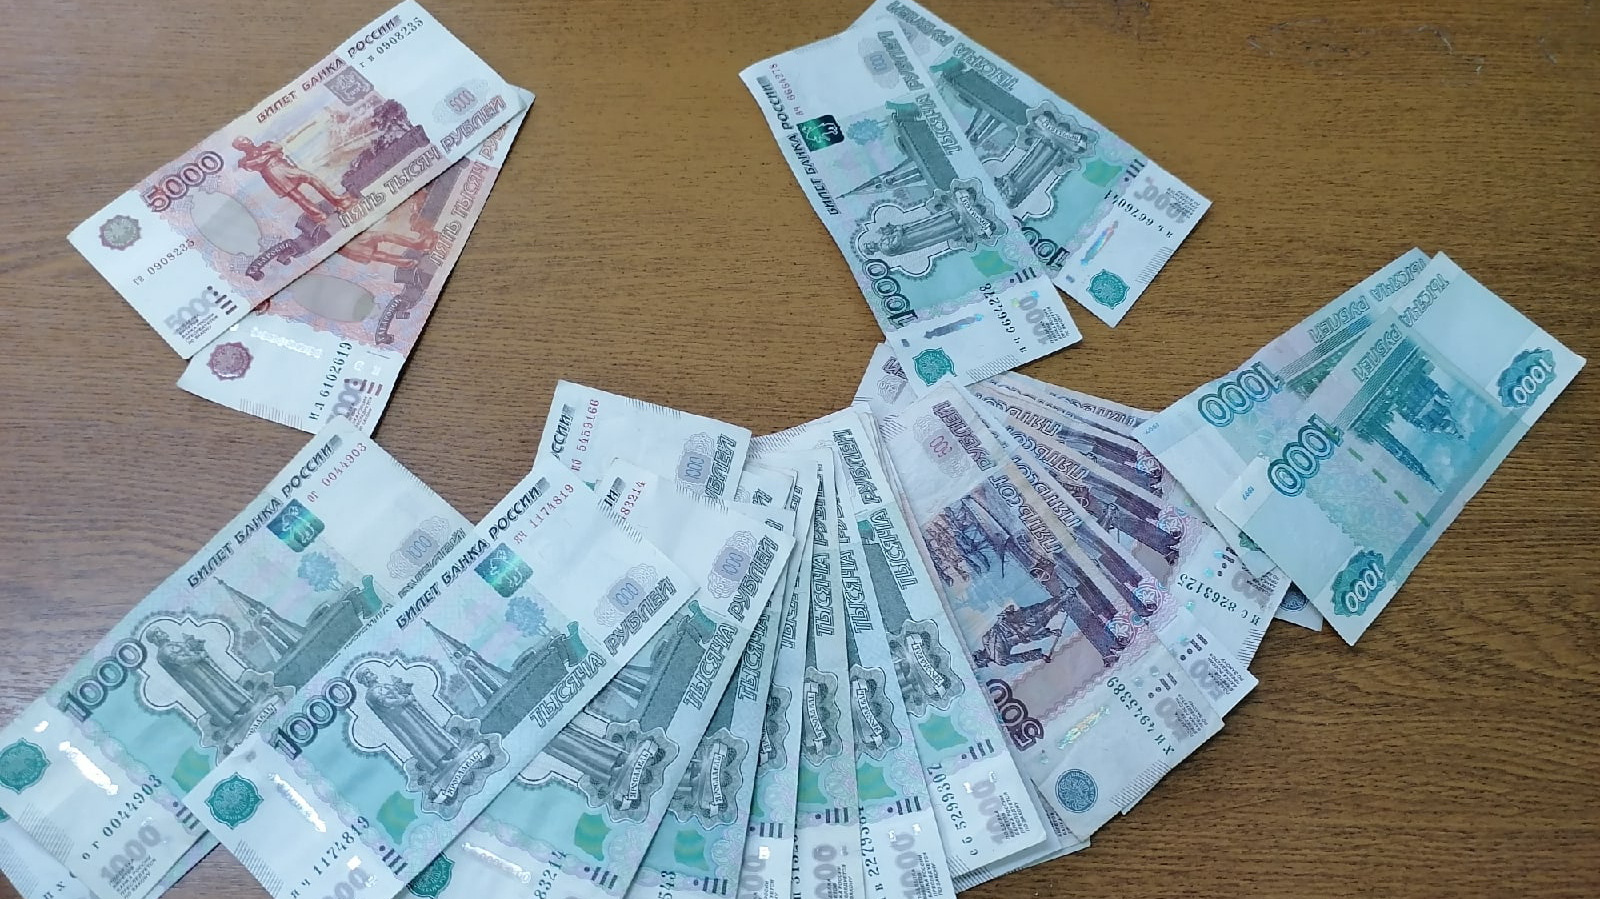 11 жителей Ульяновской области поверили мошенникам, перевели им сбережения и набрали кредитов